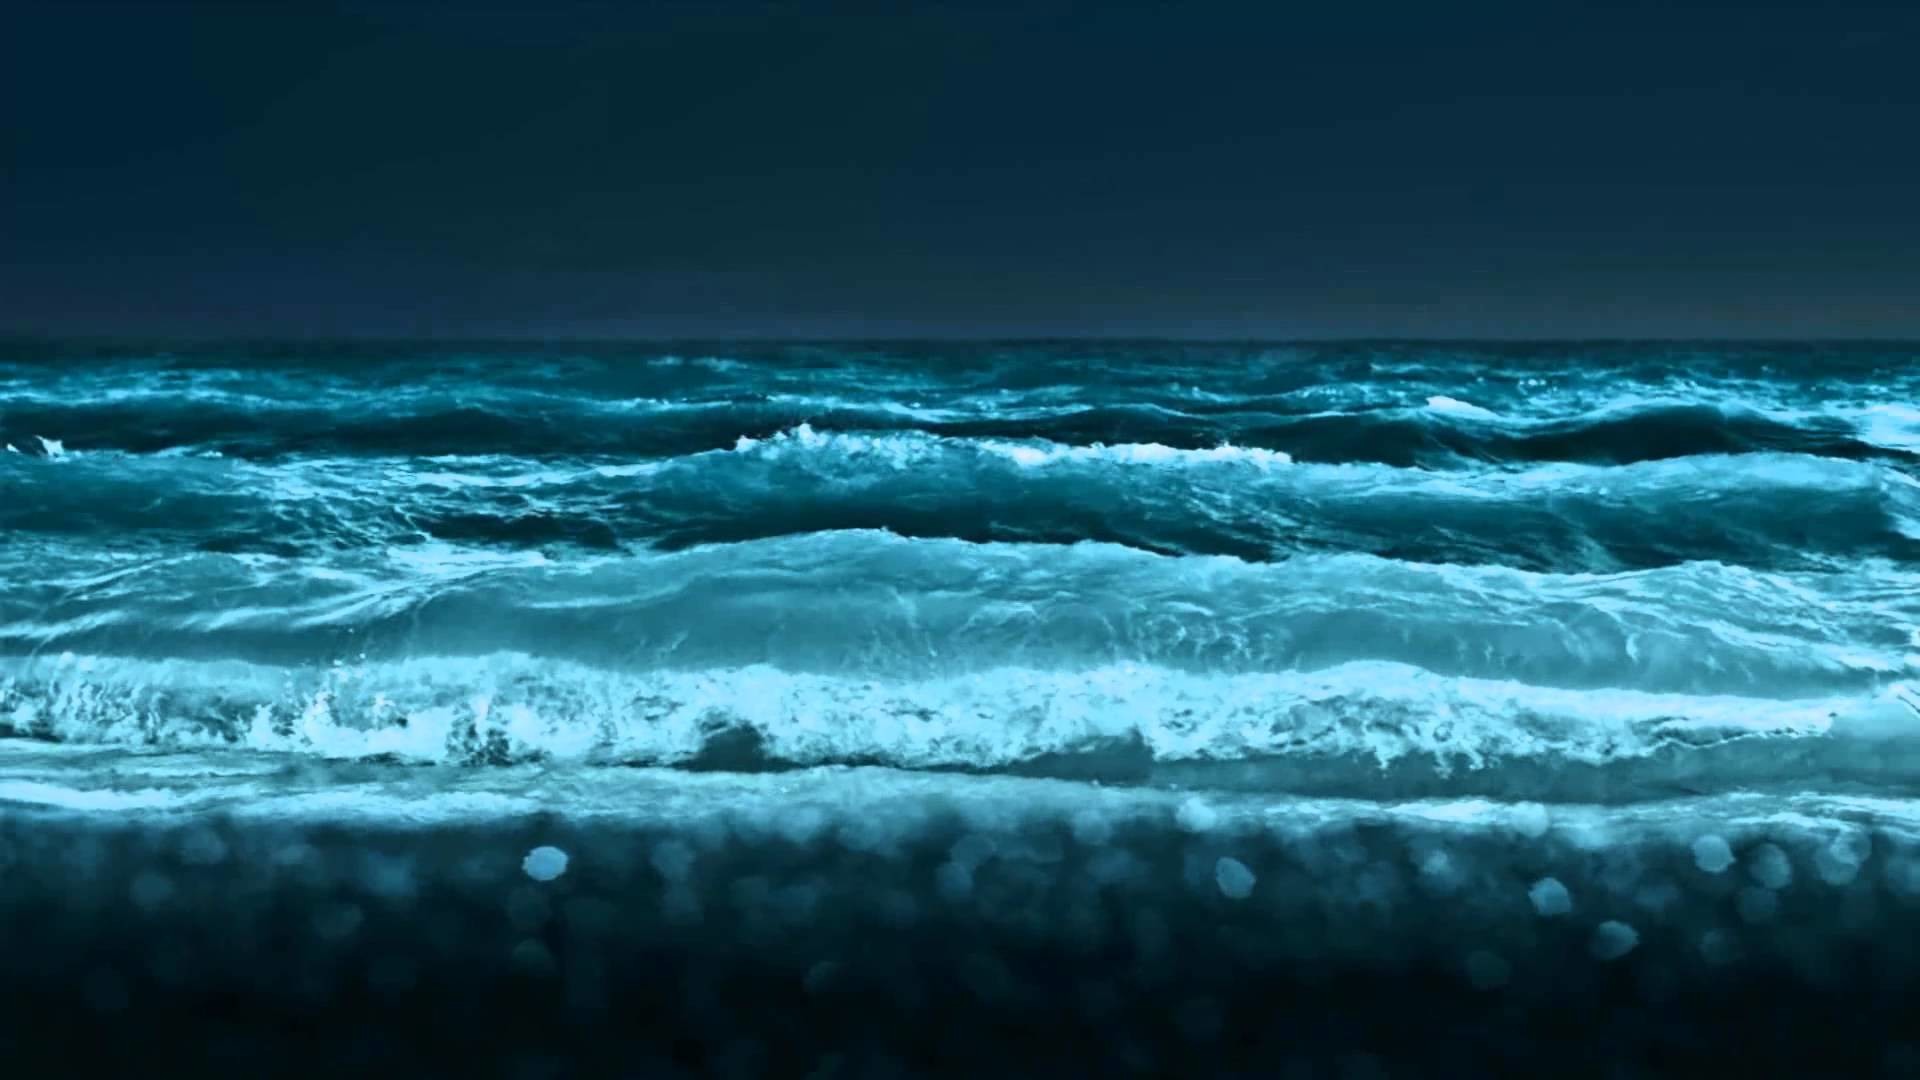 1920x1080 Ocean Waves Animated Wallpaper http://www.desktopanimated.com